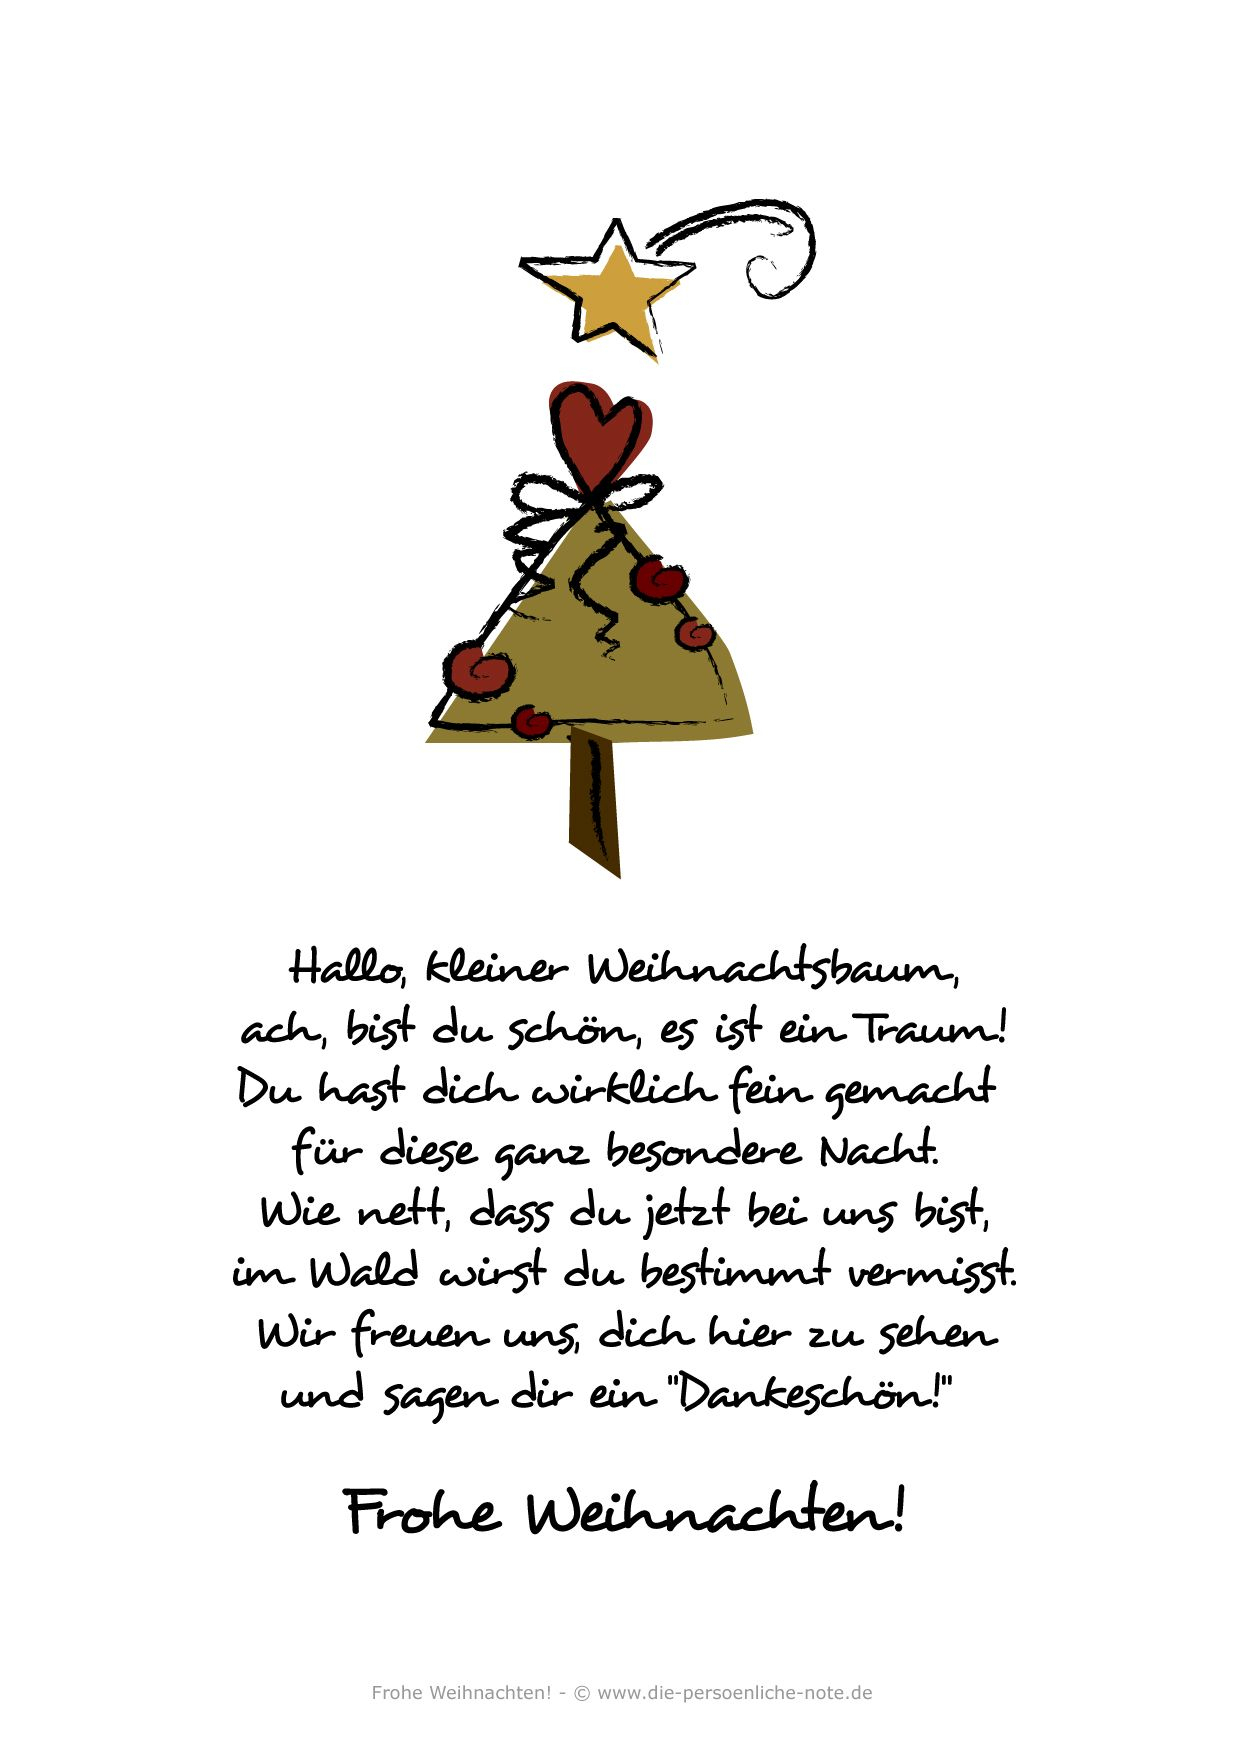 36+ 24 sprueche fuer adventskalender kinder , Kurze Weihnachtsgedichte Für Kinder kinderbilder.download kinderbilder.download